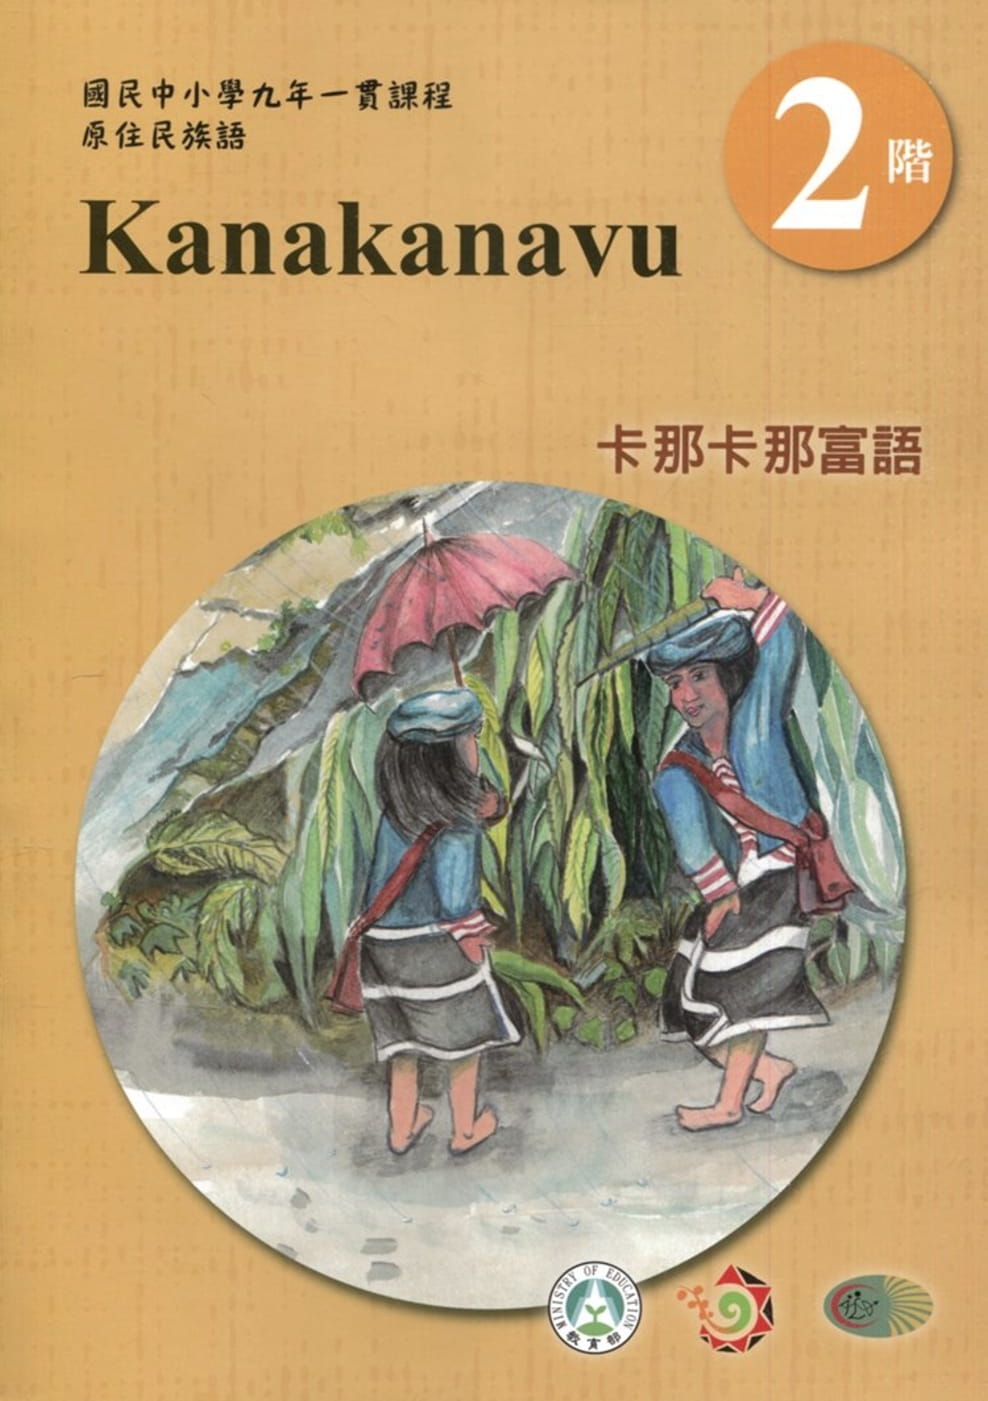 卡那卡那富語學習手冊第2階(附光碟)3版2刷